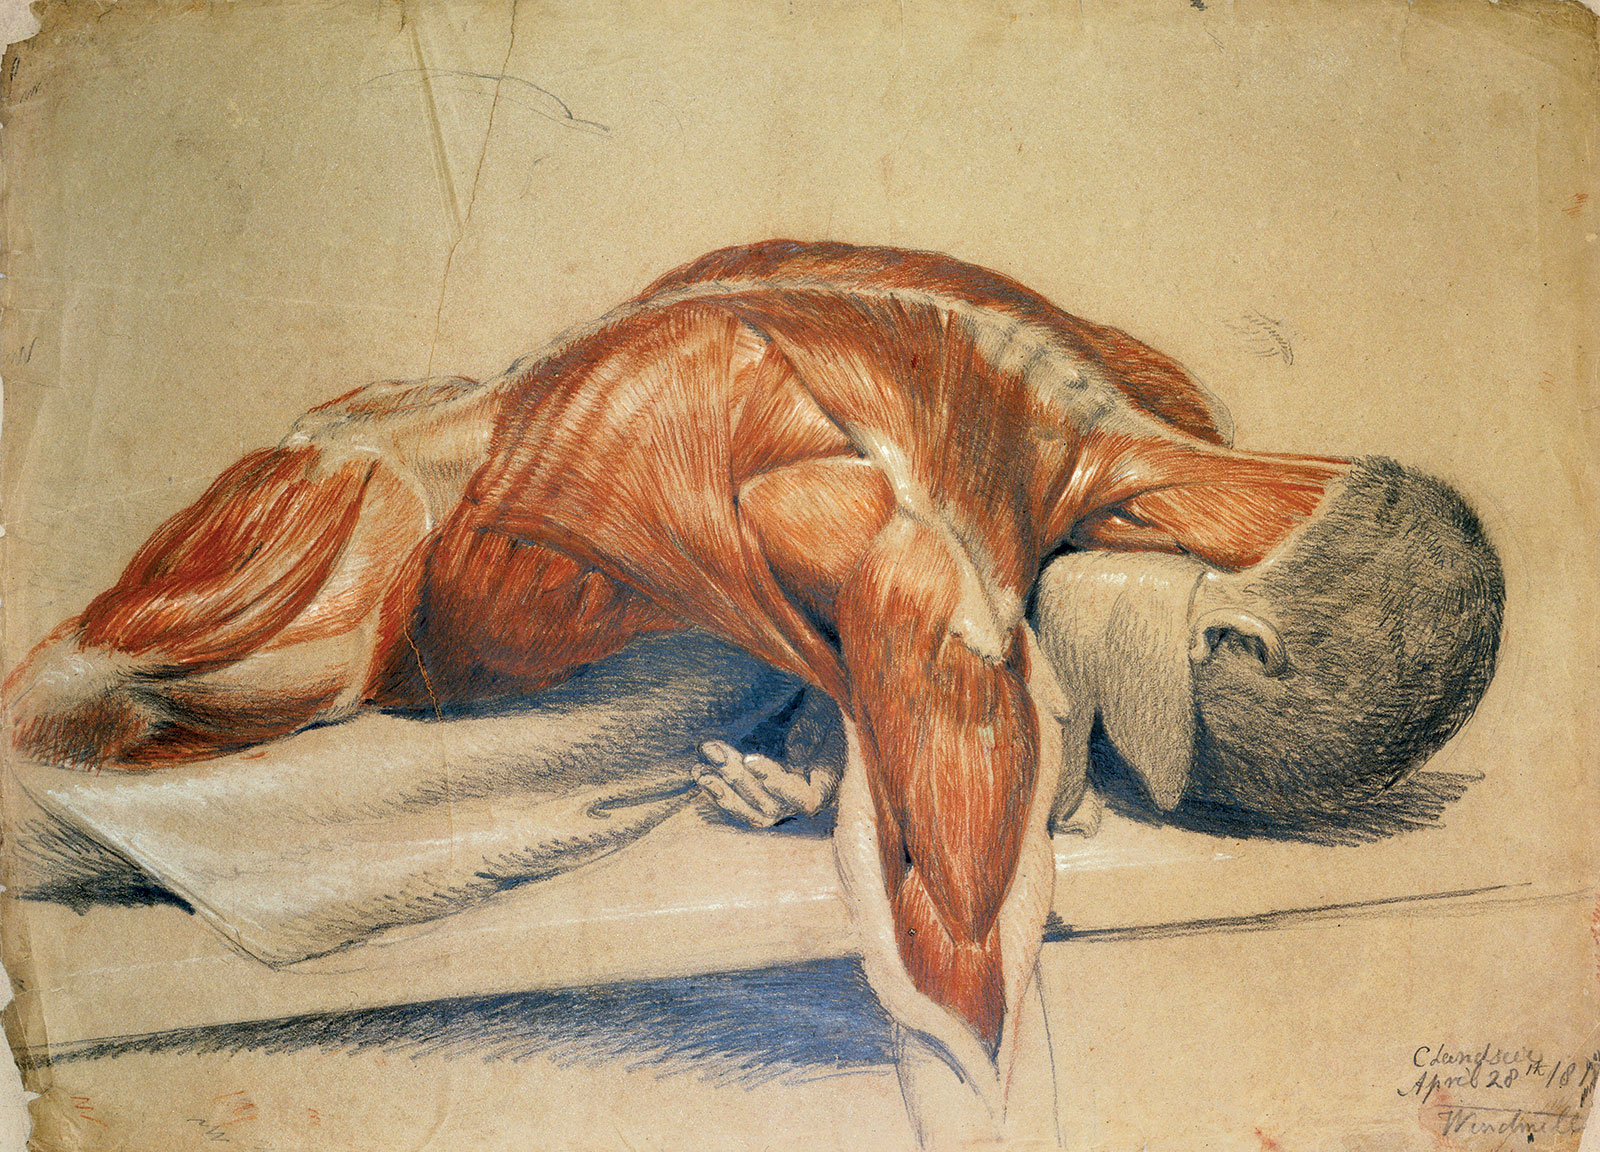  Charles Landseer, cuerpo desollado, 1813. Wellcome Collection